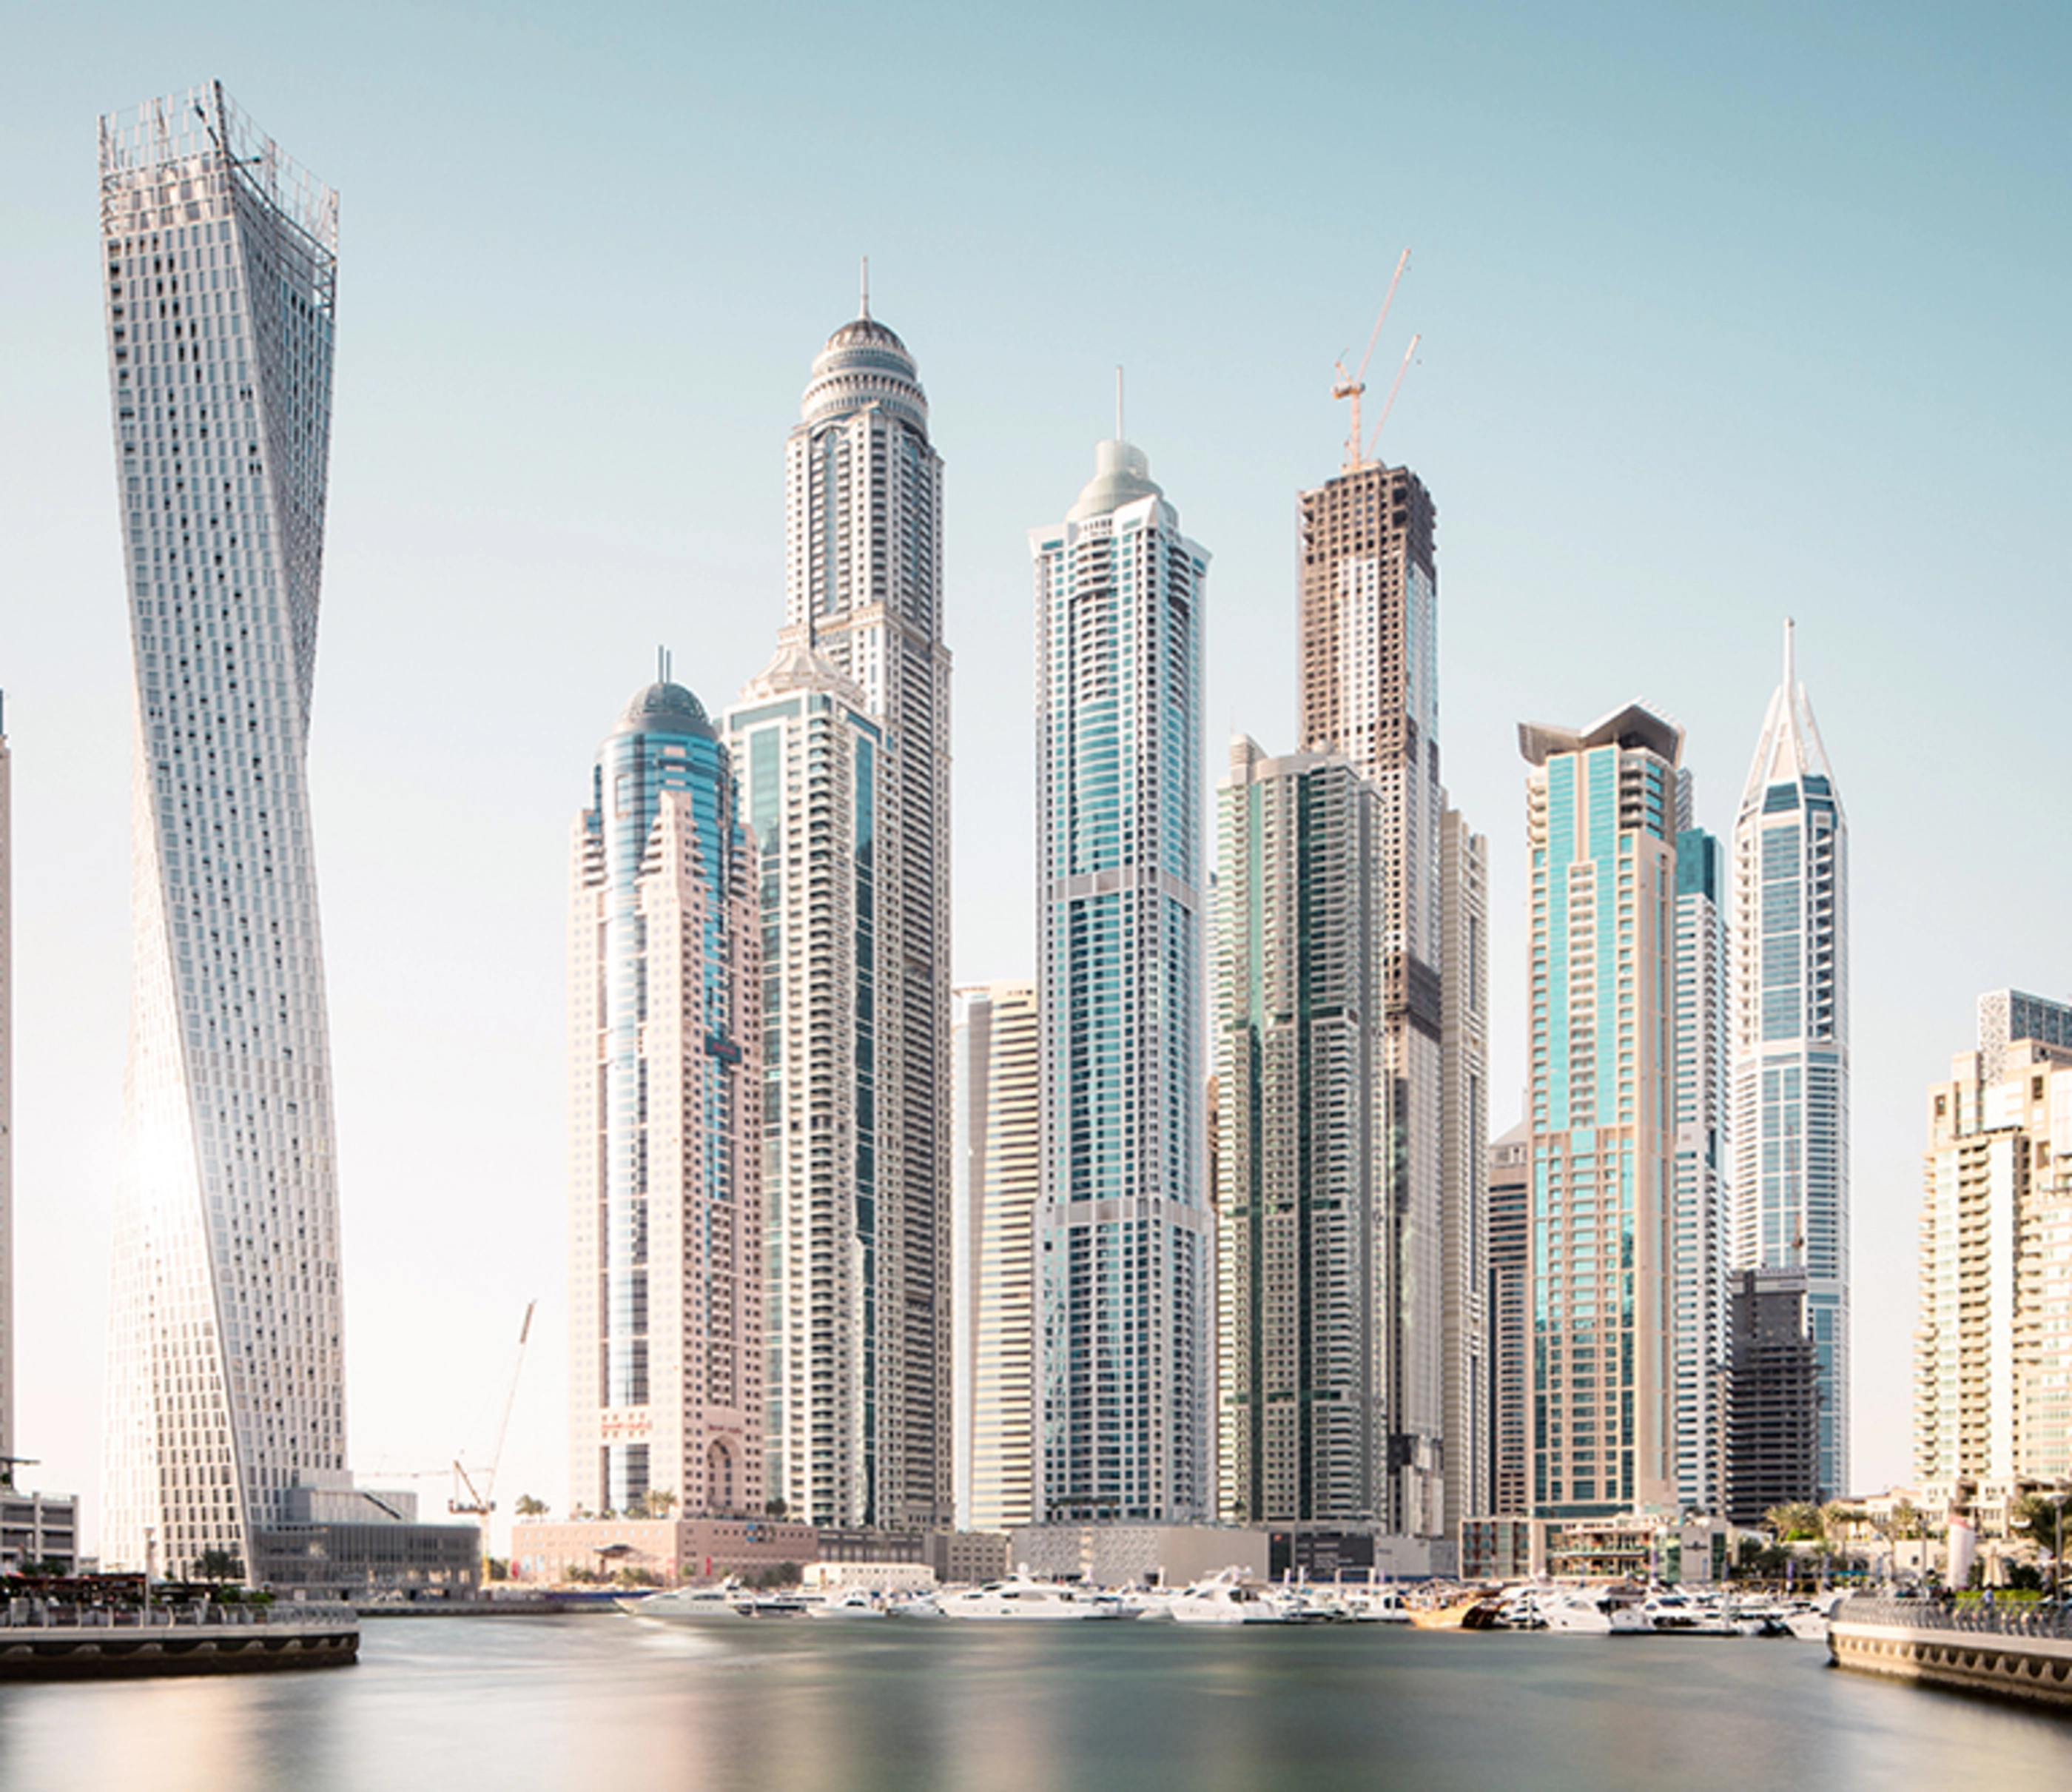 Dubai marina futuristic buildings.